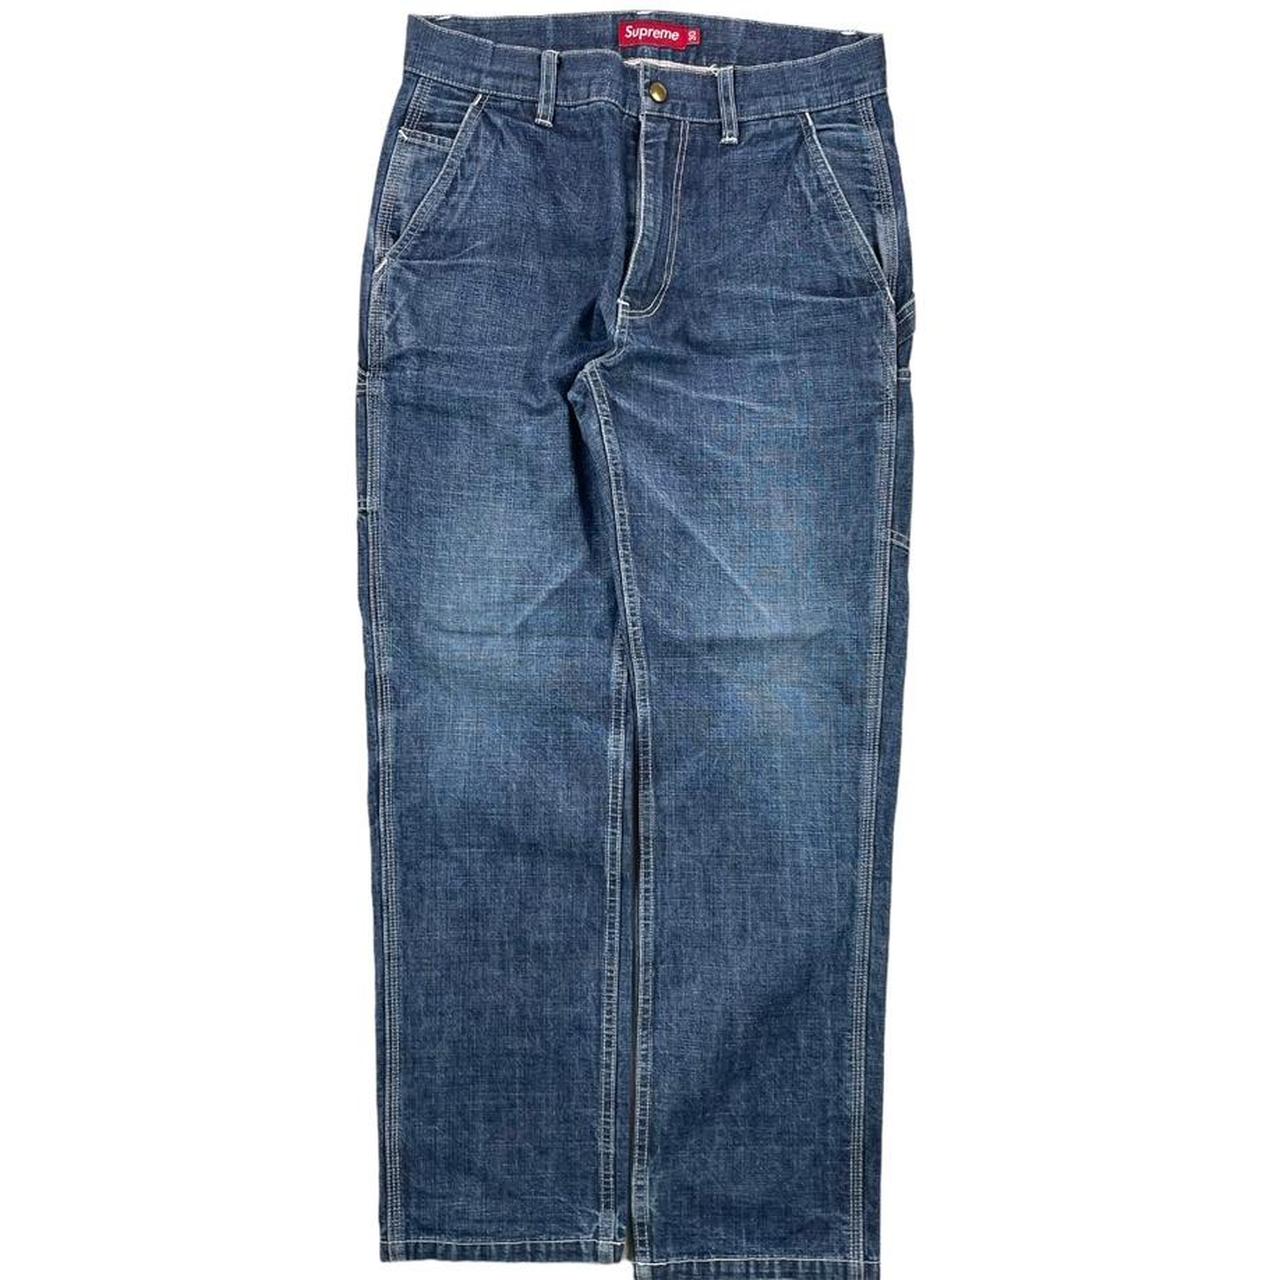 Supreme Carpenter Jeans (30w) – Solo Threads